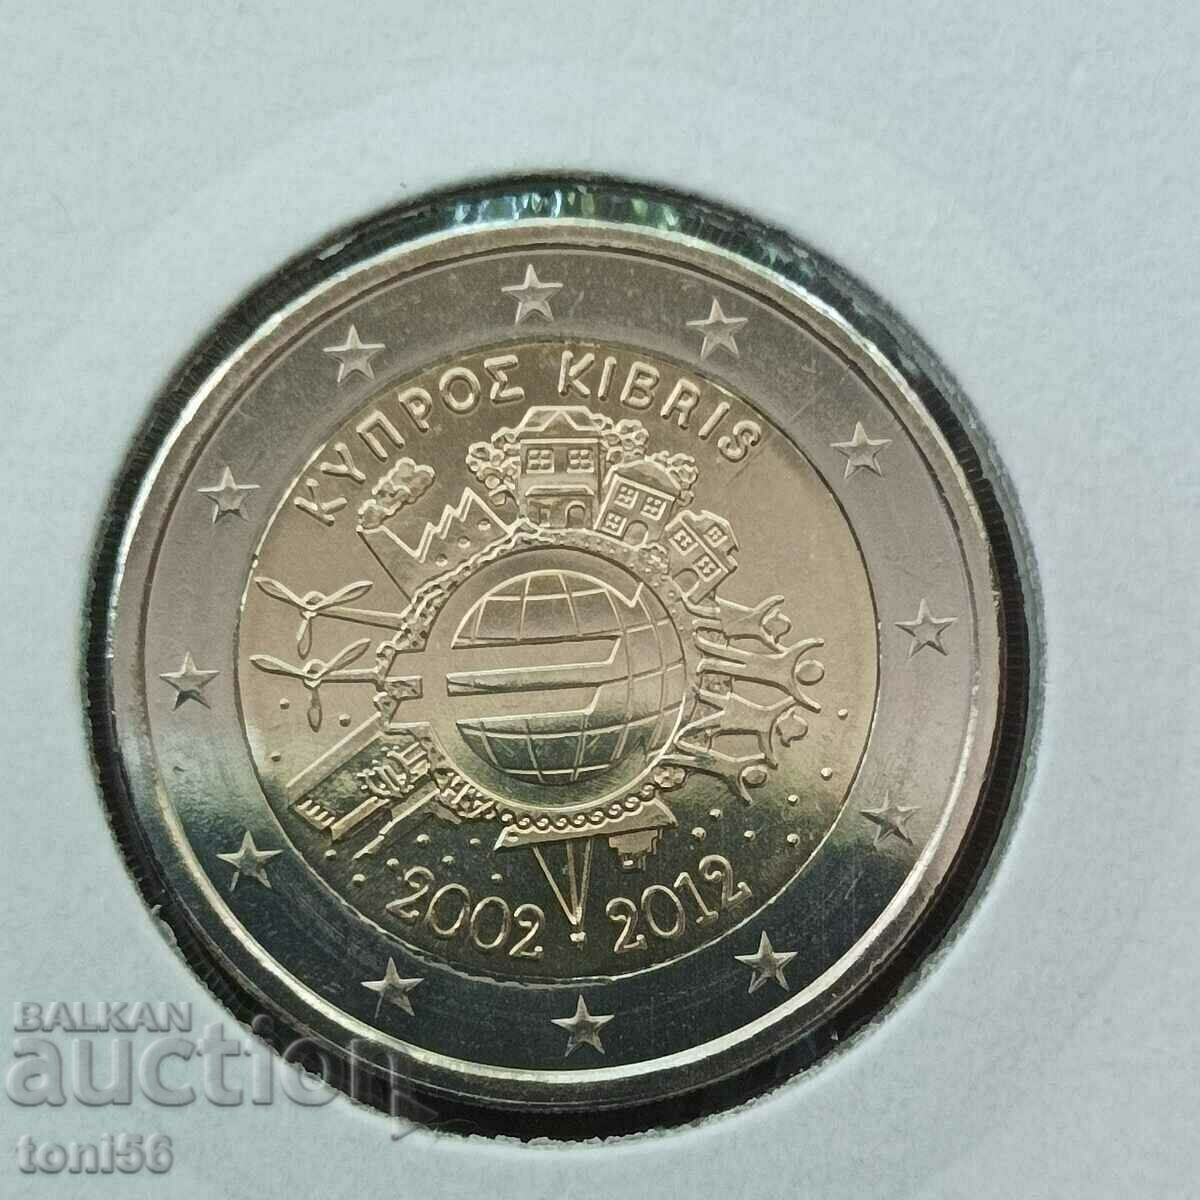 Κύπρος 2 ευρώ 2012 - 10 χρόνια "Κέρματα και τραπεζογραμμάτια ευρώ"